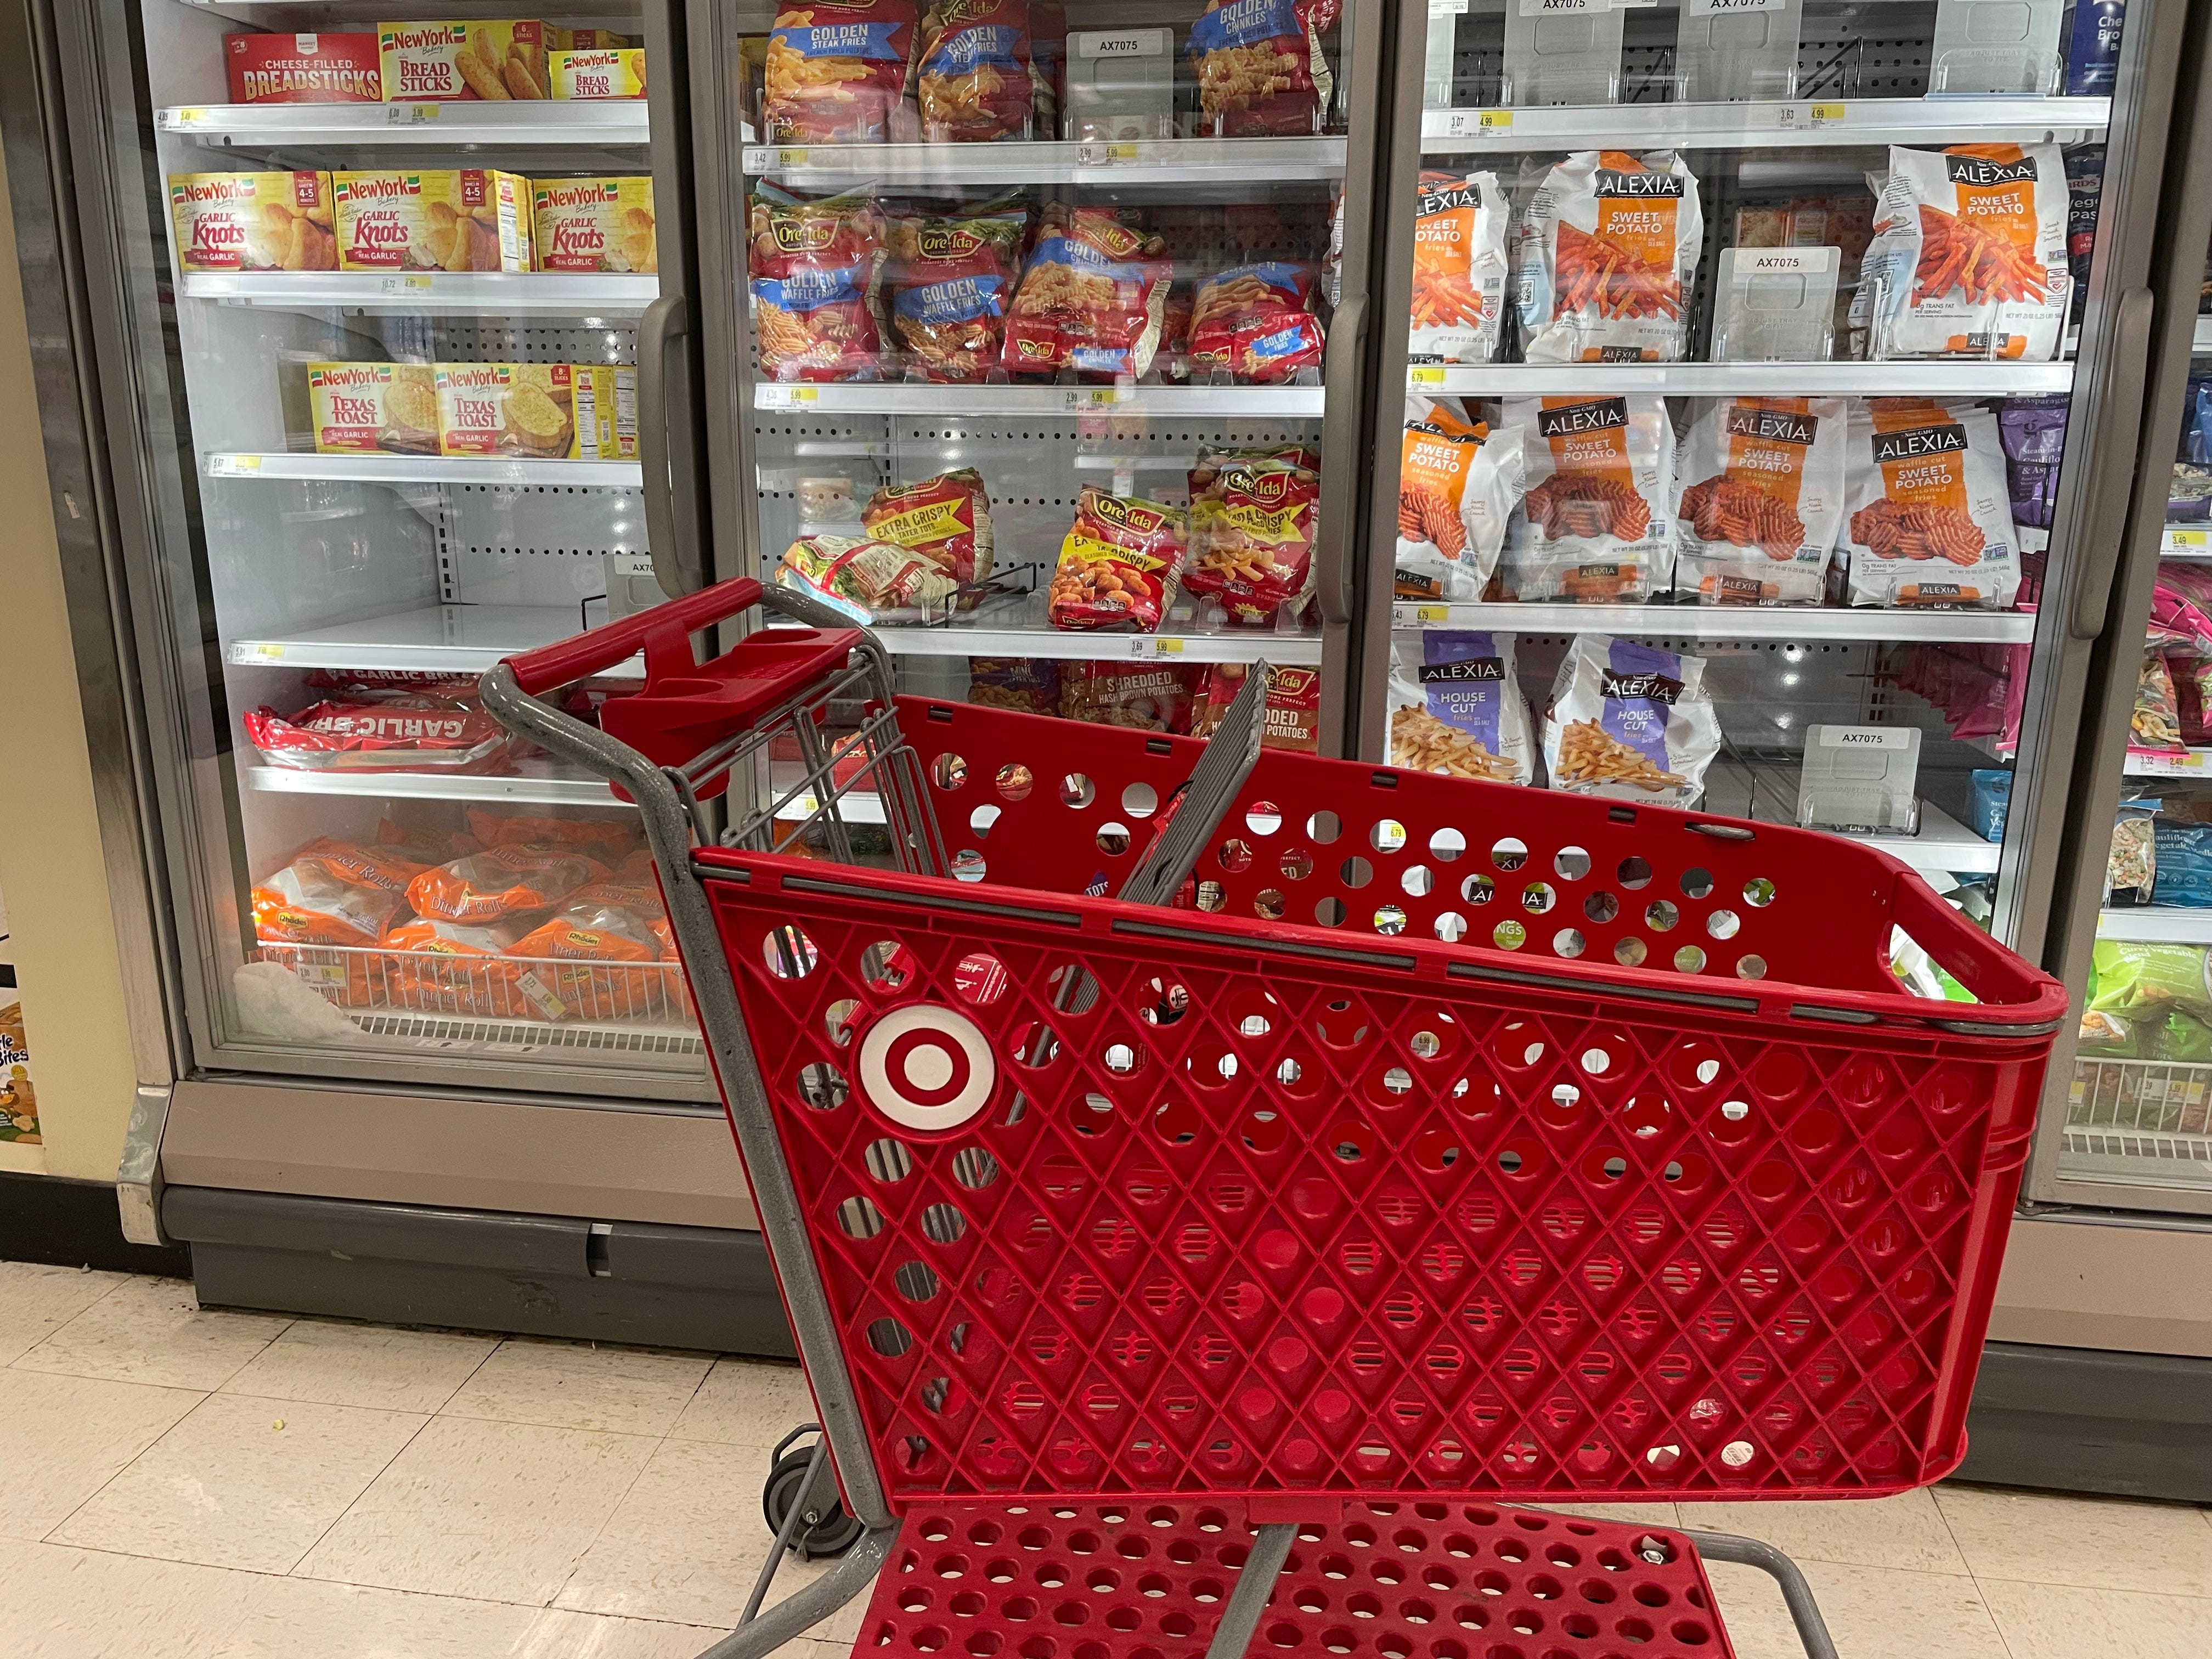 die Tiefkühltruhe bei Target und ein roter Einkaufswagen